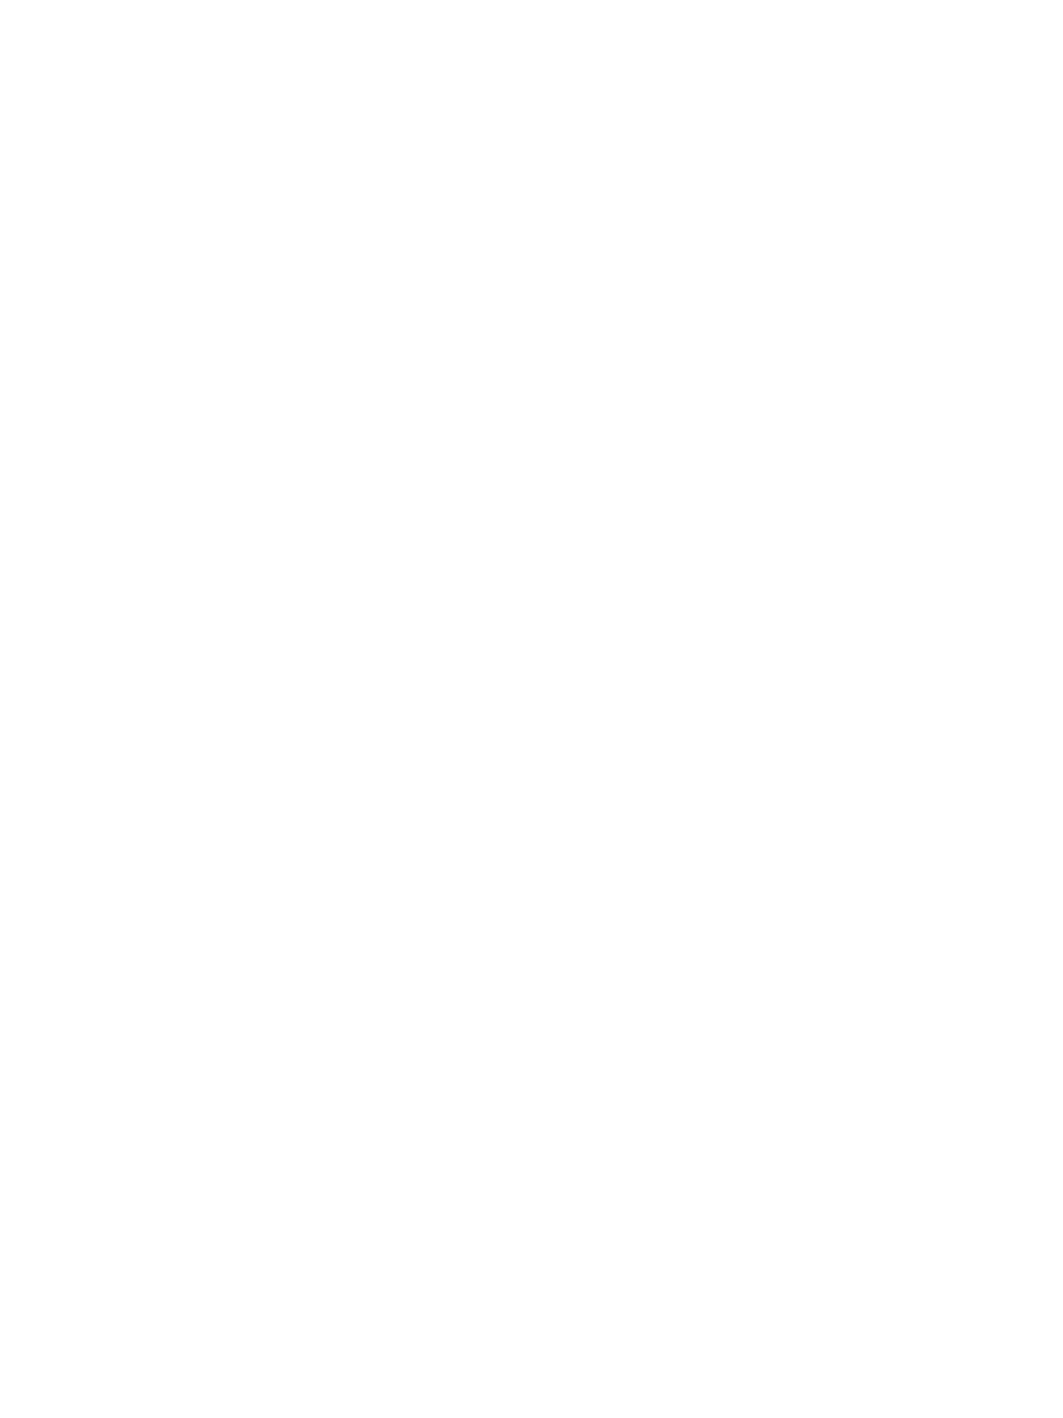 Fendler Seemuller Moreau Vincent - architectes